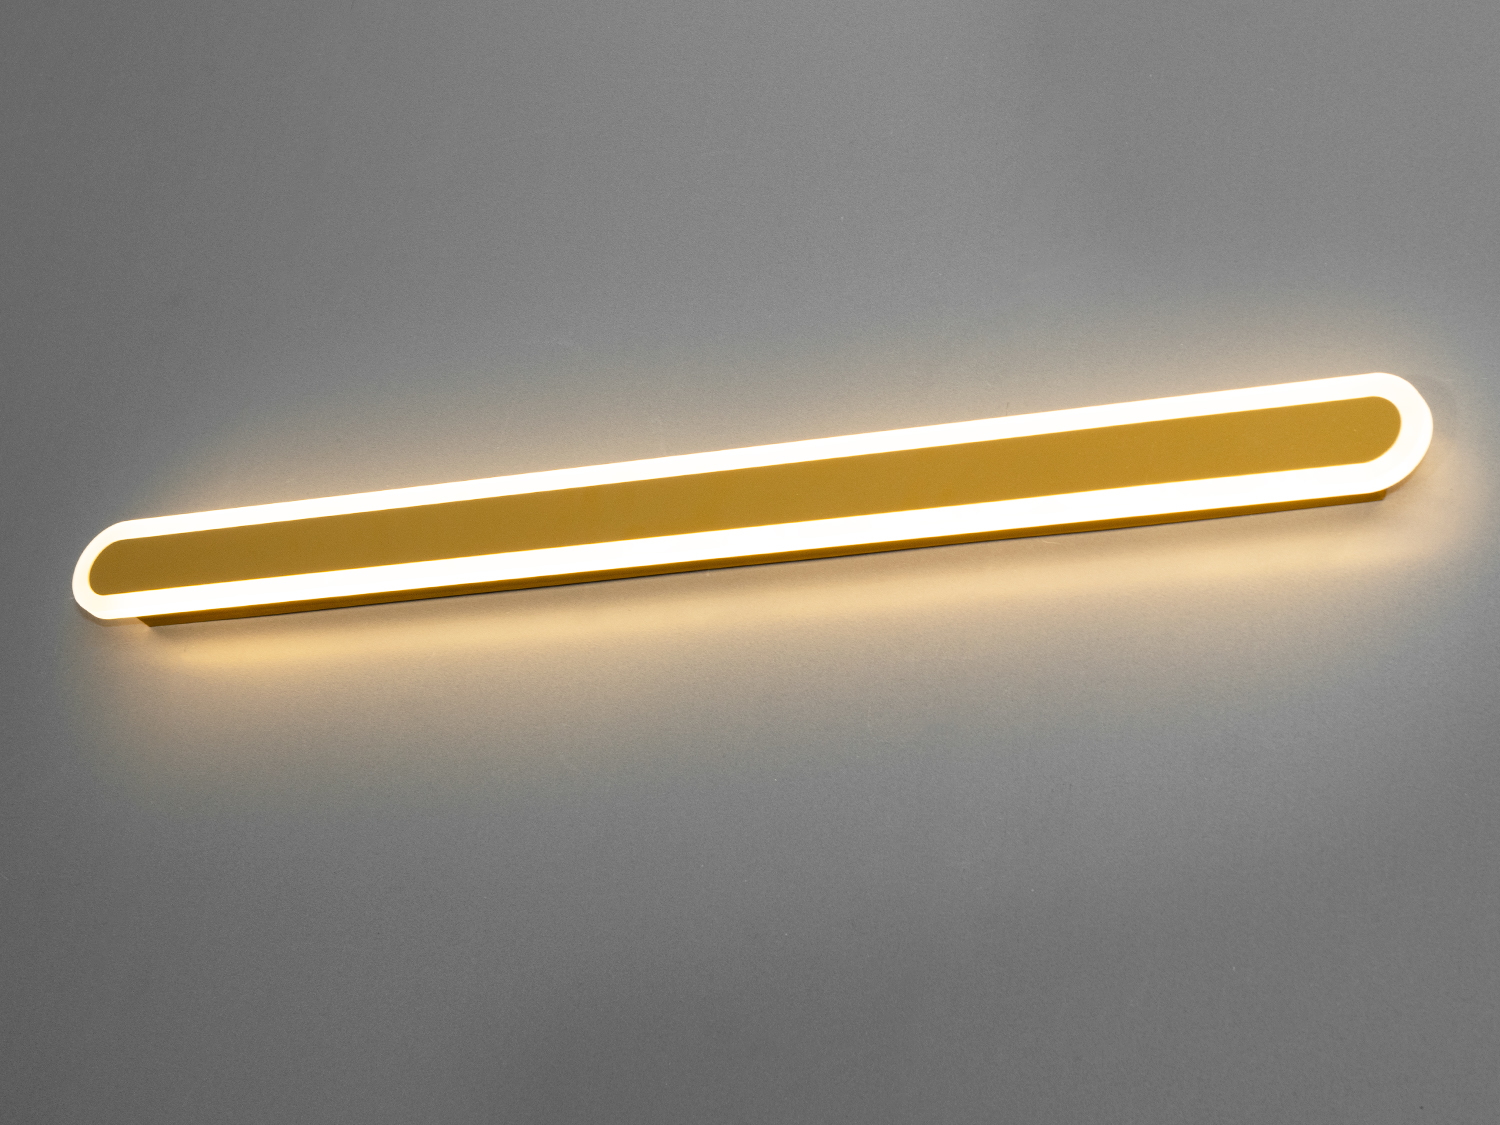 Світлодіодний світильник-планка на 30W відрізняється своєю унікальністю та сучасним дизайном. Він представляє собою елегантну і лаконічну лінію світла, яка ідеально підходить для створення чистого освітлення в будь-якому просторі, будь то спальня або кабінет. Його чисті, прямі лінії і мінімалістична естетика роблять його вишуканим доповненням до сучасного інтер'єру.
Світильник-бра складається з довгої світлодіодної панелі, обрамленої тонкою акриловою обідкою, що надає йому витонченого зовнішнього вигляду. Металева основа світильника має ненав'язливий білий матовий колір, що контрастує з яскравістю світлодіодів, створюючи візуальний інтерес і глибину. Відсутність видимих кріплень і кабелів посилює враження легкості та плавності дизайну.
Це  зовсім нове і незвичайне виконання плафонів із акрилу, що обрамляють LED стрічку. Таке бра запросто підійде під будь-який інтер'єр - класичний, сучасний і навіть в стилі «хай-тек». 
Ці світильники є ідеальним рішенням для акцентного (елементного) підсвічування в інтер'єрі - підсвічування дзеркал, картин, стінних ніш, особливих деталей інтер'єру. 
У даній серії всі світильники оснащені унікальними енергозберігаючими світлодіодними стрічками. Які за дуже низької споживаної потужності створюють потужний світловий потік. 
Витончені накладні світлодіодні світильники призначені для створення яскравого світлодіодного освітлення з регульованою температурою кольору від теплого білого до холодного білого. 
Перемикання спектрів світіння світлодіодним панелі здійснюється простим вимиканням-включенням.
Світлодіодний світильник дозволяє вибирати режими освітлення в залежності від часу доби.
Вони створені щоб бути окрасою інтер'єру, а не просто утилітарним світильником як звичайне лінійне підсвічування.
Кріпиться до будь-яких видів поверхонь універсальним кріпленням-на планку.